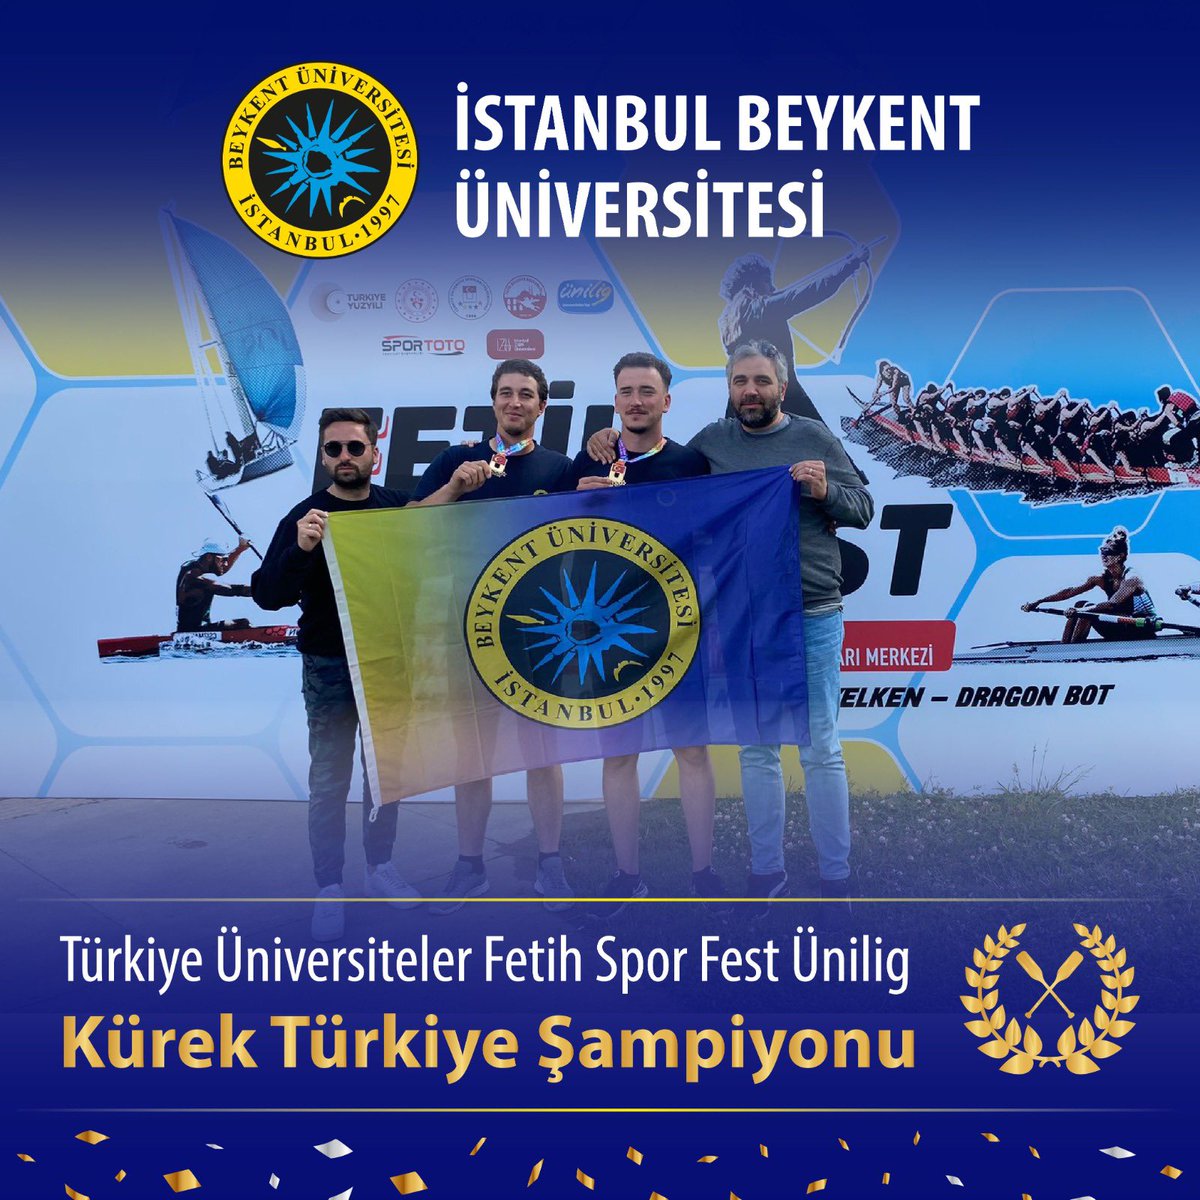 Türkiye Üniversiteler Fetih Spor Fest Ünilig Kürek Türkiye Şampiyonu olan İstanbul Beykent Üniversitesi Kürek Takımımızı kutlarız!

#İstanbulBeykentÜniversitesi #KürekTakımı #İşteGelecek